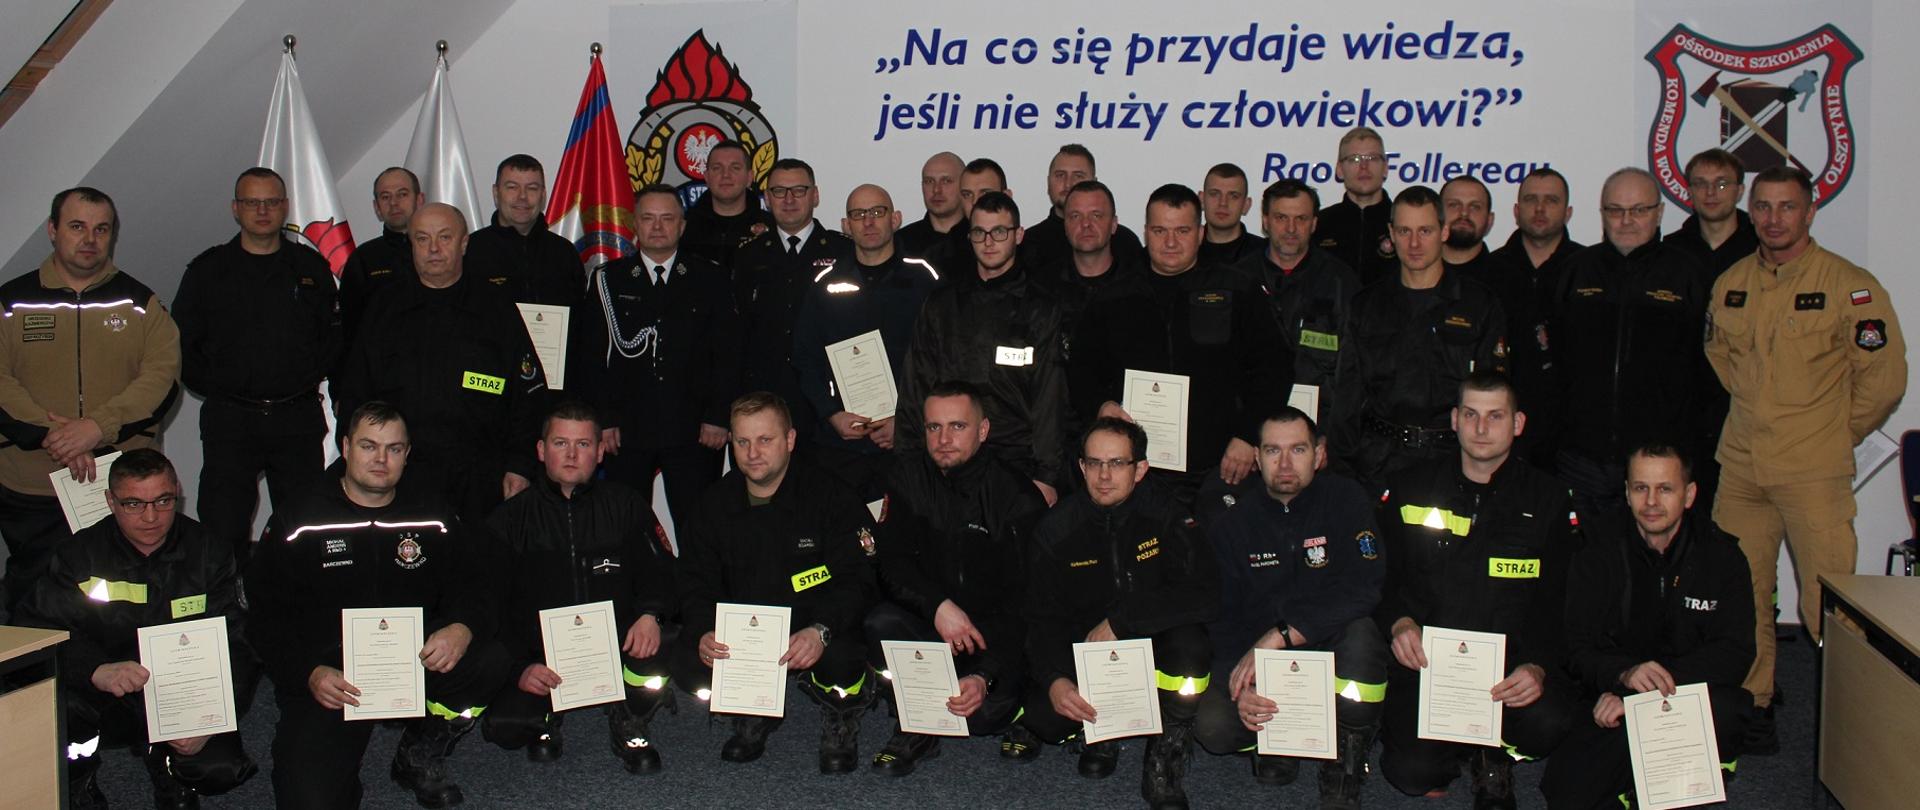 Druhowie w mundurach koszarowych z dyplomami świadczącymi o ukończeniu kursu naczelników OSP